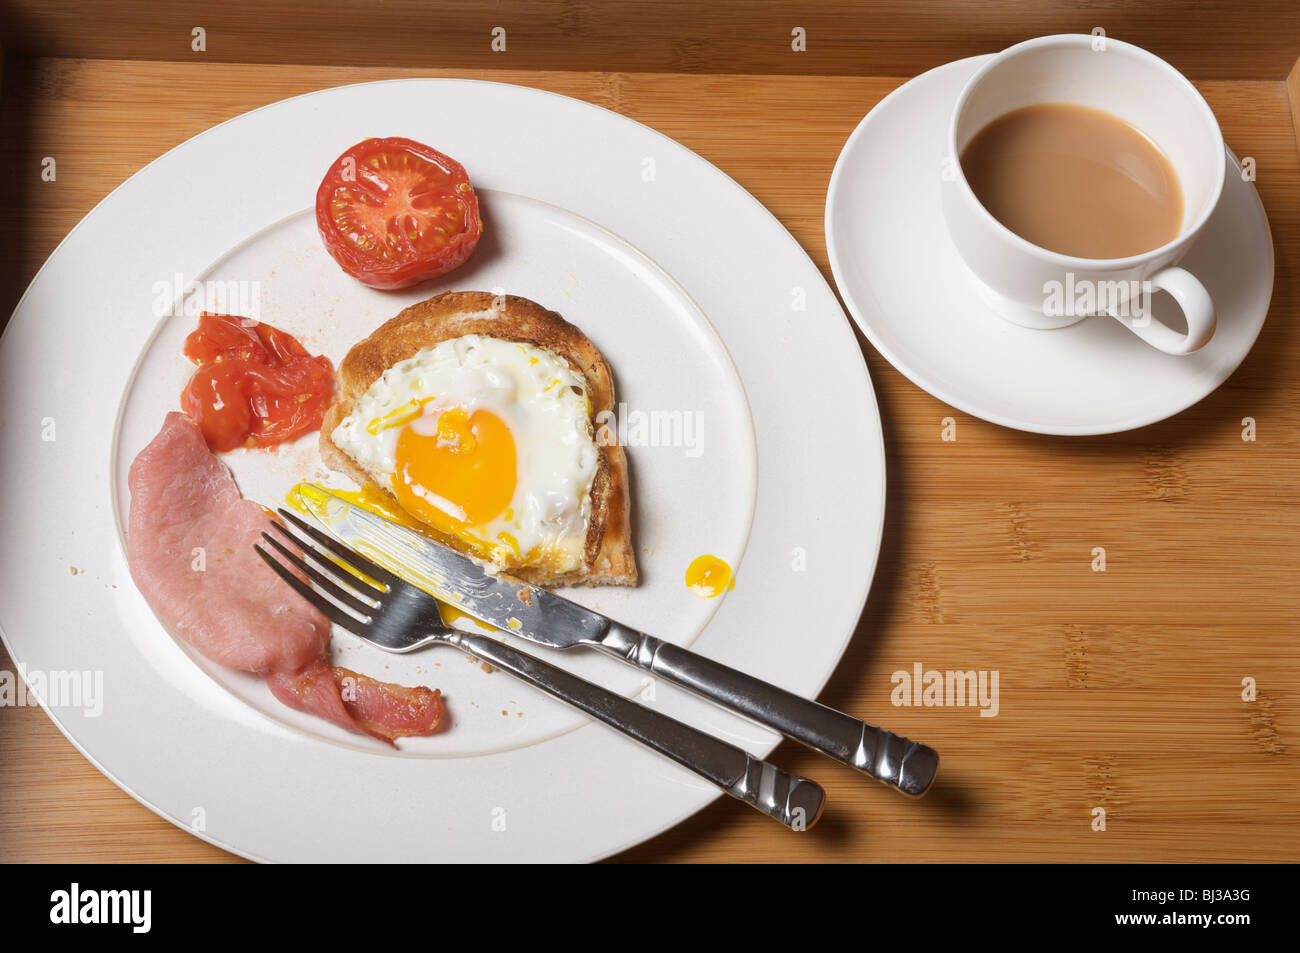 half-eaten English breakfast Stock Photo